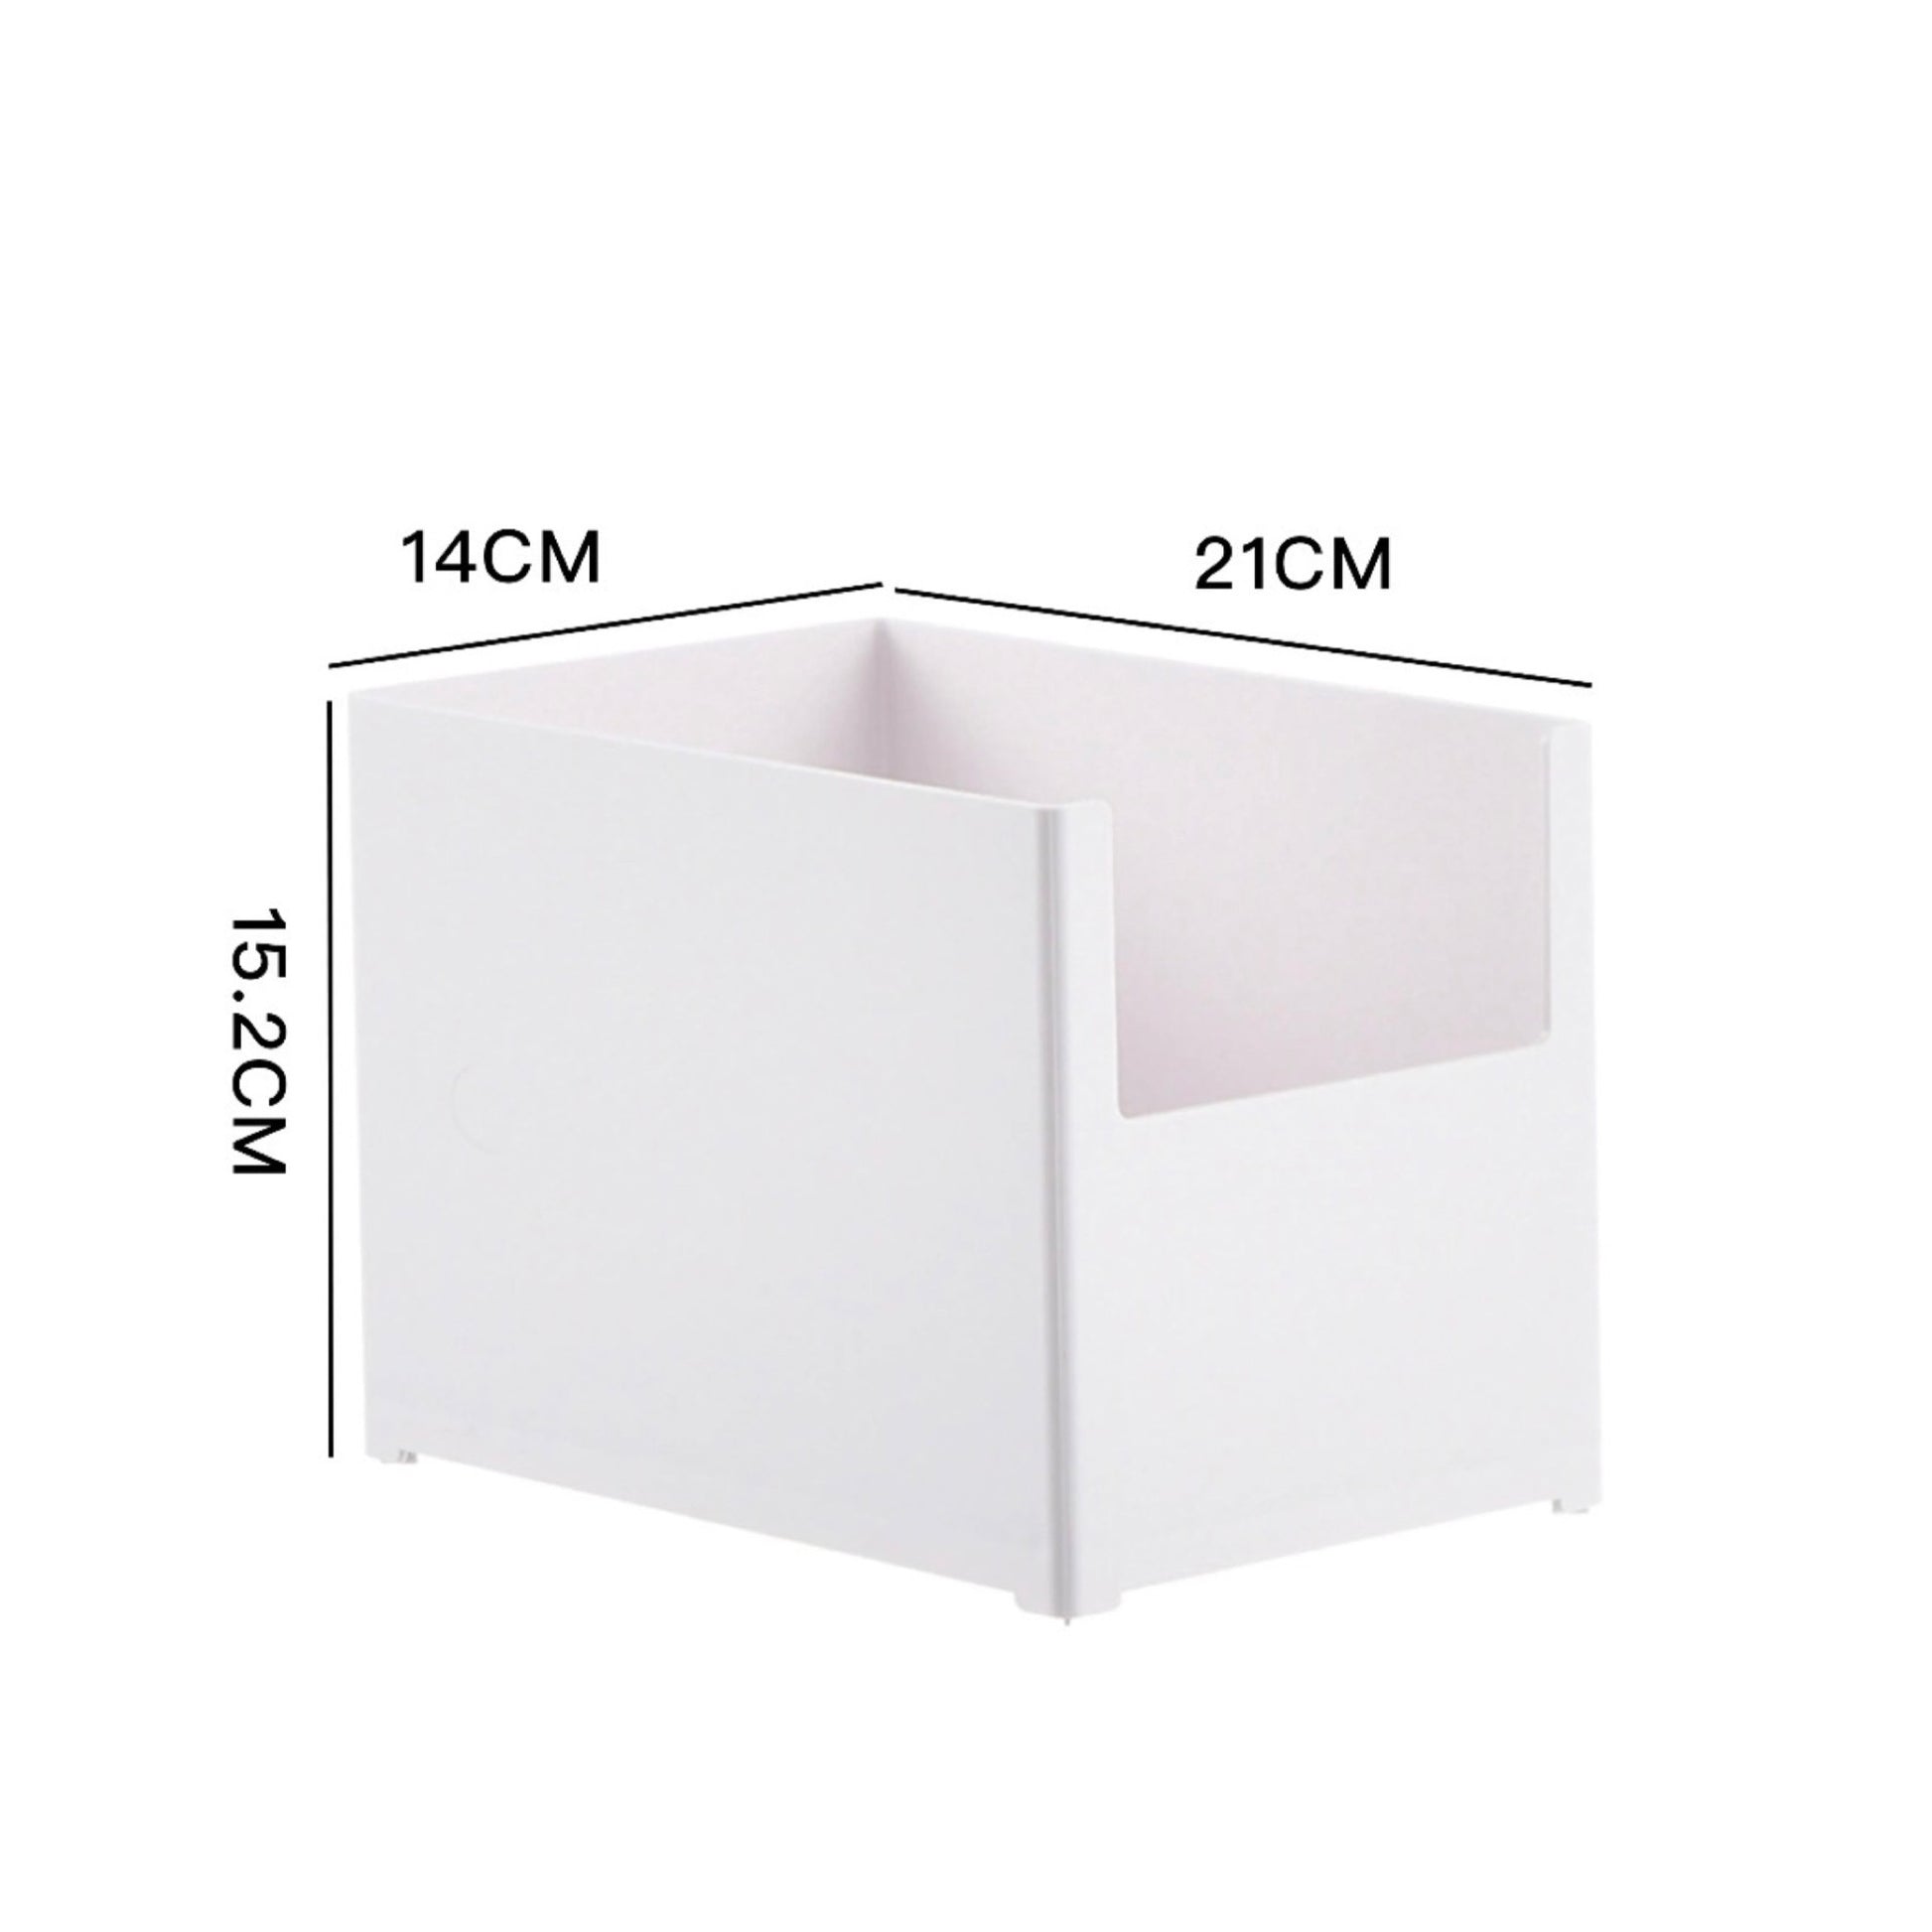 Kompakte, weiße, stapelbare Aufbewahrungsbox mit einer offenen Seite, ideal für schnellen Zugriff. Die Maße betragen 21 cm in der Tiefe, 14 cm in der Breite und 15,2 cm in der Höhe. Ihr einfaches Design passt gut in eine minimalistische oder moderne Einrichtung und hilft dabei, Ordnung zu halten.